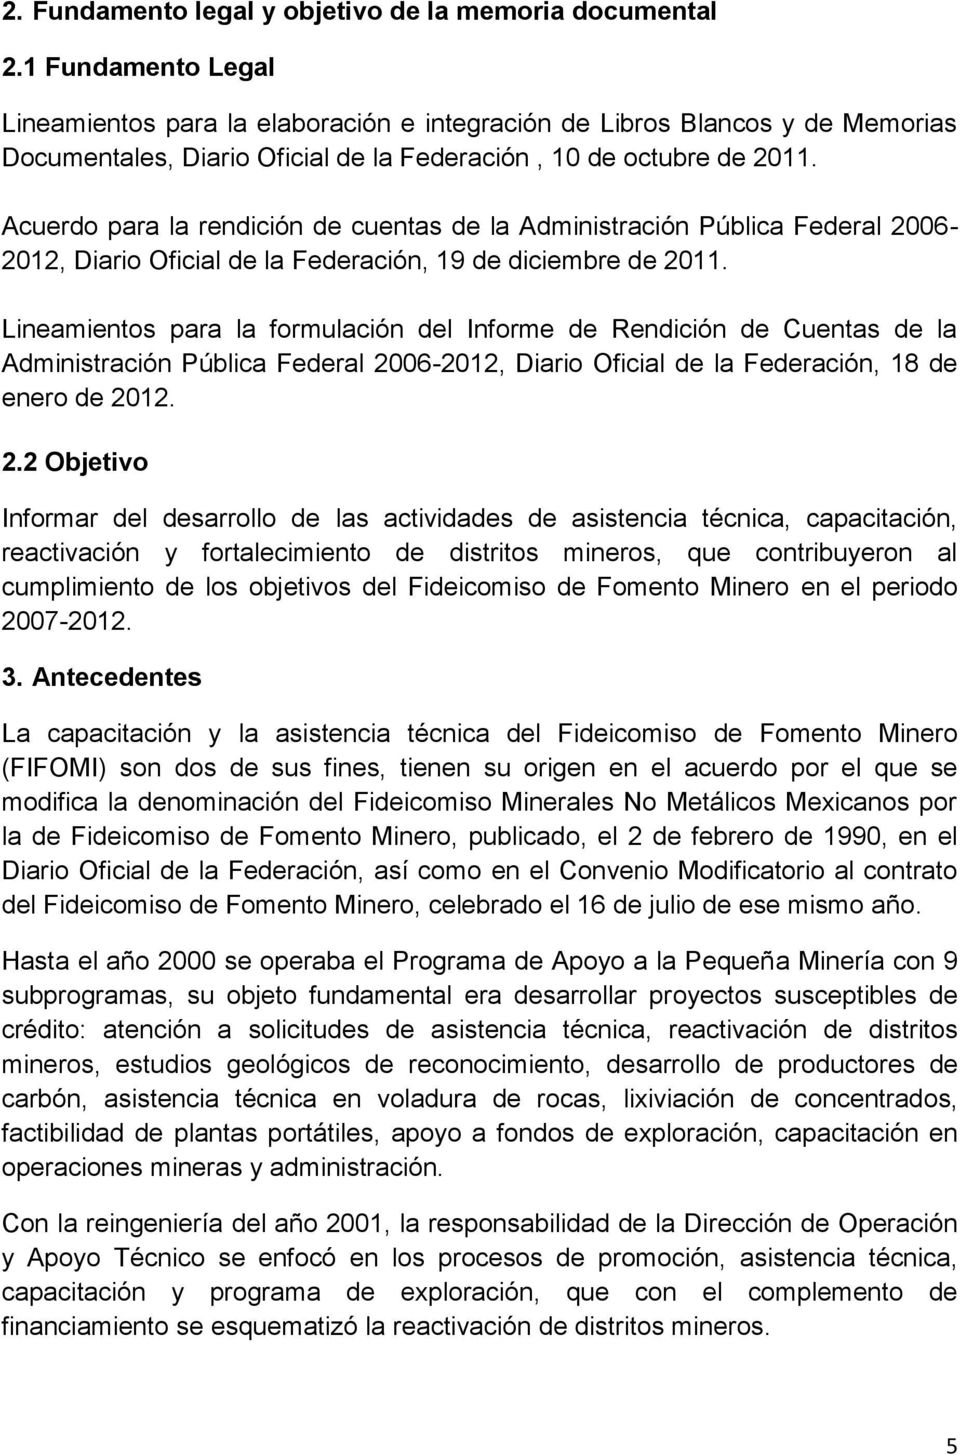 Acuerdo para la rendición de cuentas de la Administración Pública Federal 2006-2012, Diario Oficial de la Federación, 19 de diciembre de 2011.